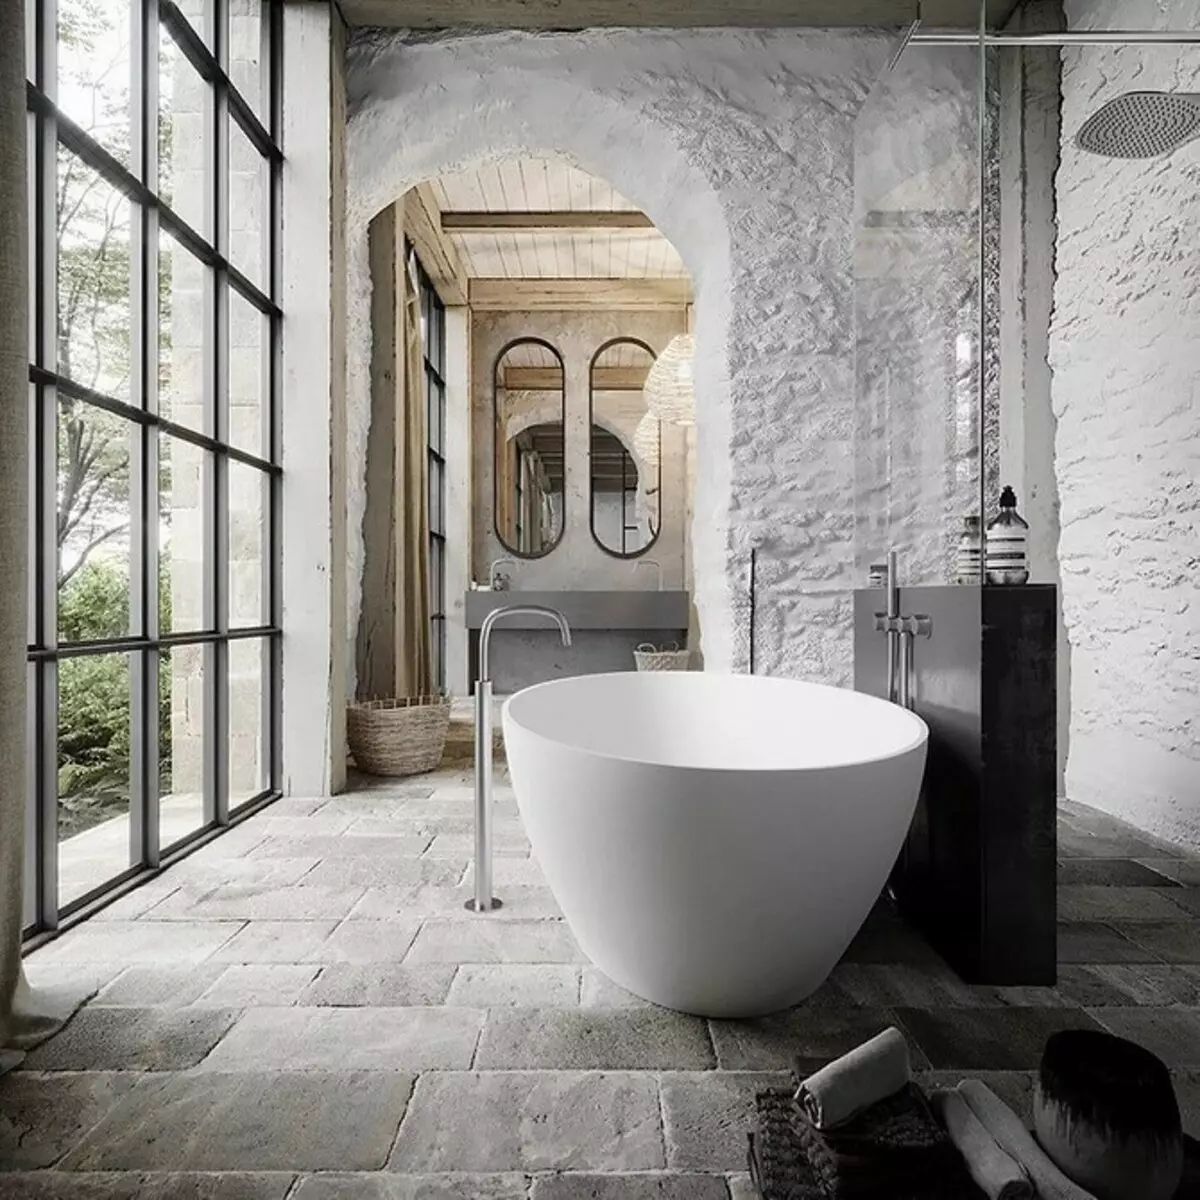 Duş ve Bath ile Banyo Tasarımı: 75 Fotoğraflar - IVD.RU 4108_57